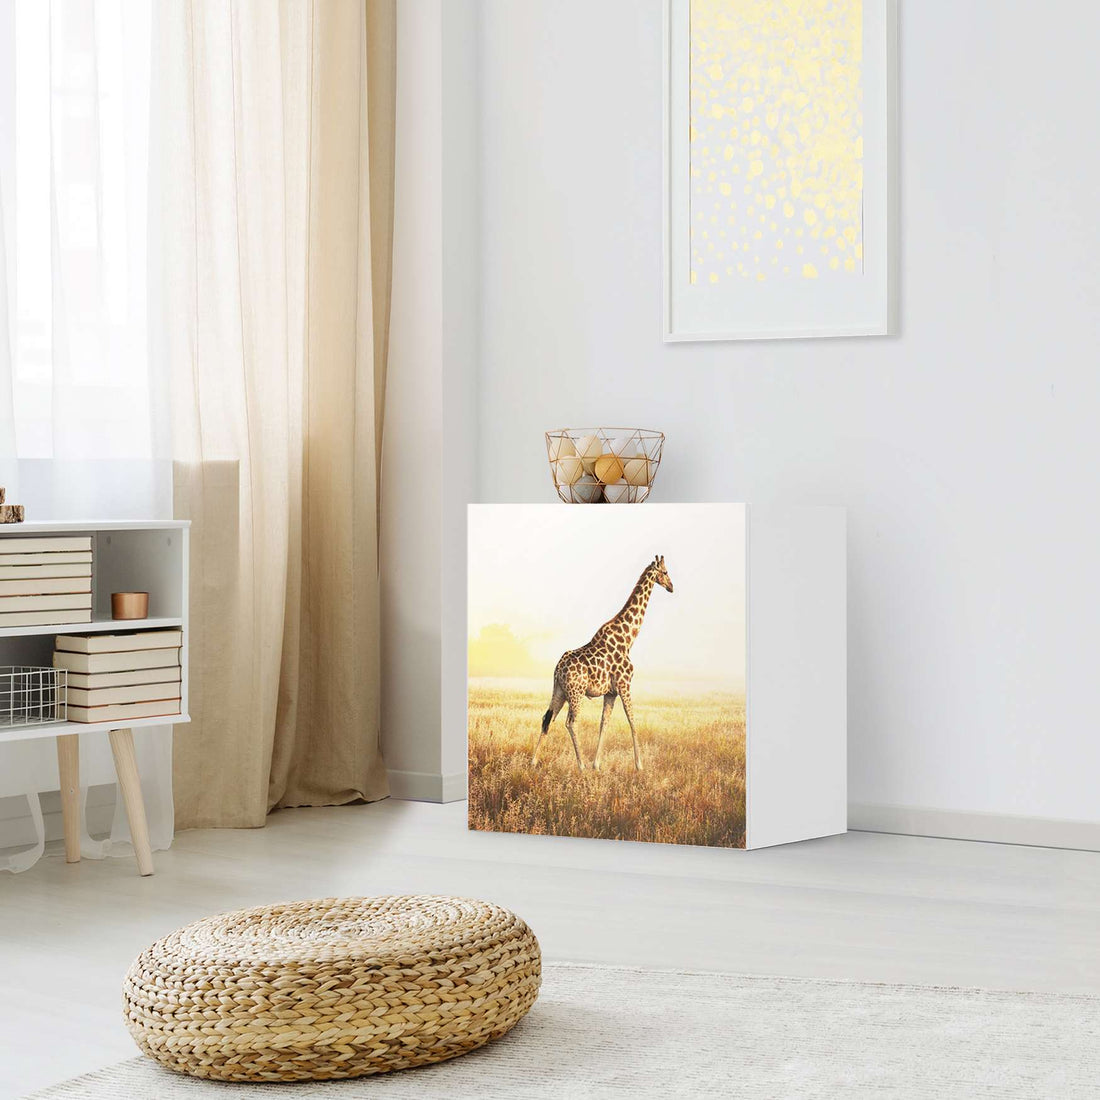 Klebefolie für Möbel Savanna Giraffe - IKEA Besta Regal 1 Türe - Wohnzimmer